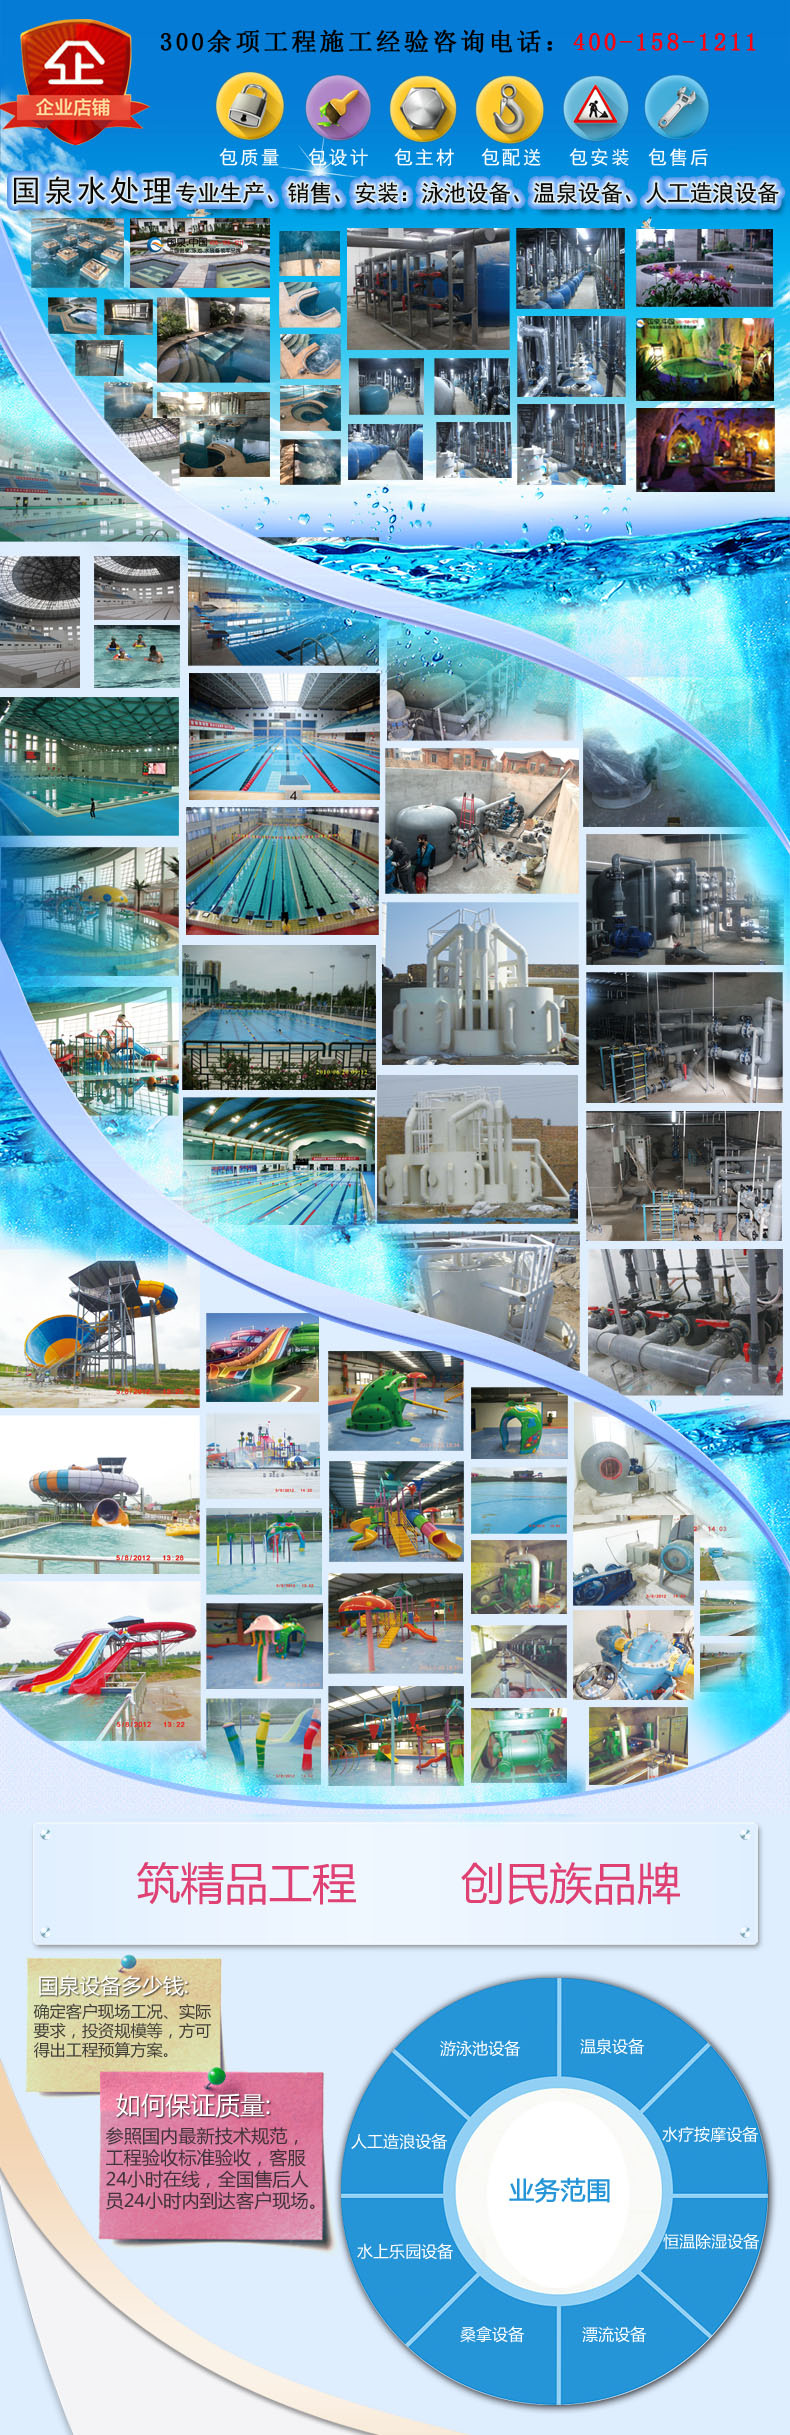 国泉水处理专业生产、销售、安装：泳池设备、温泉设备、人工造浪设备